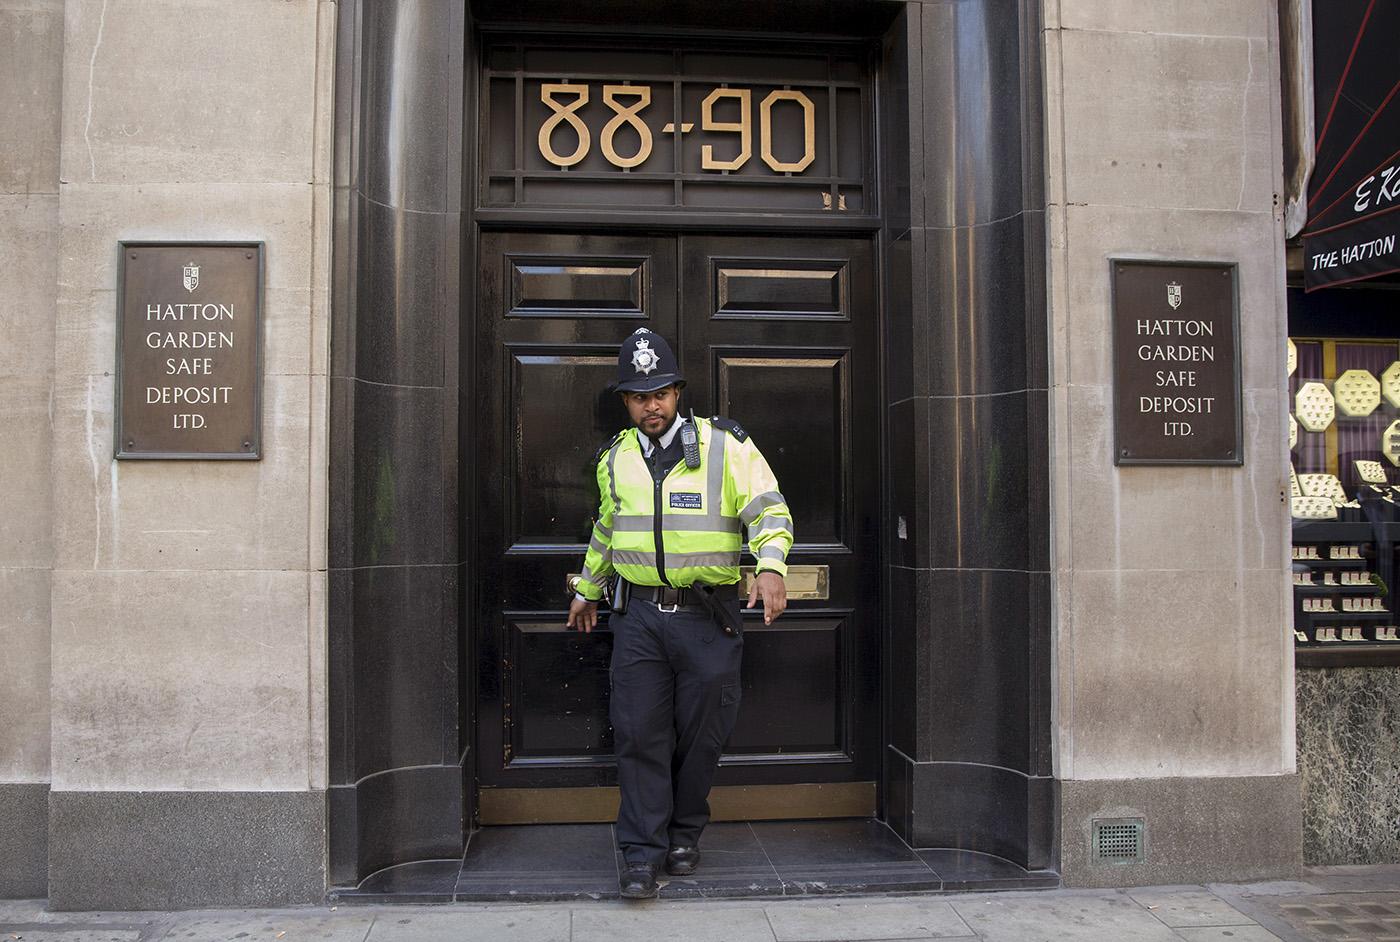 En polis kommer ut från Hatton Garden, där runt 70 bankfack plundrats under påskhelgen.